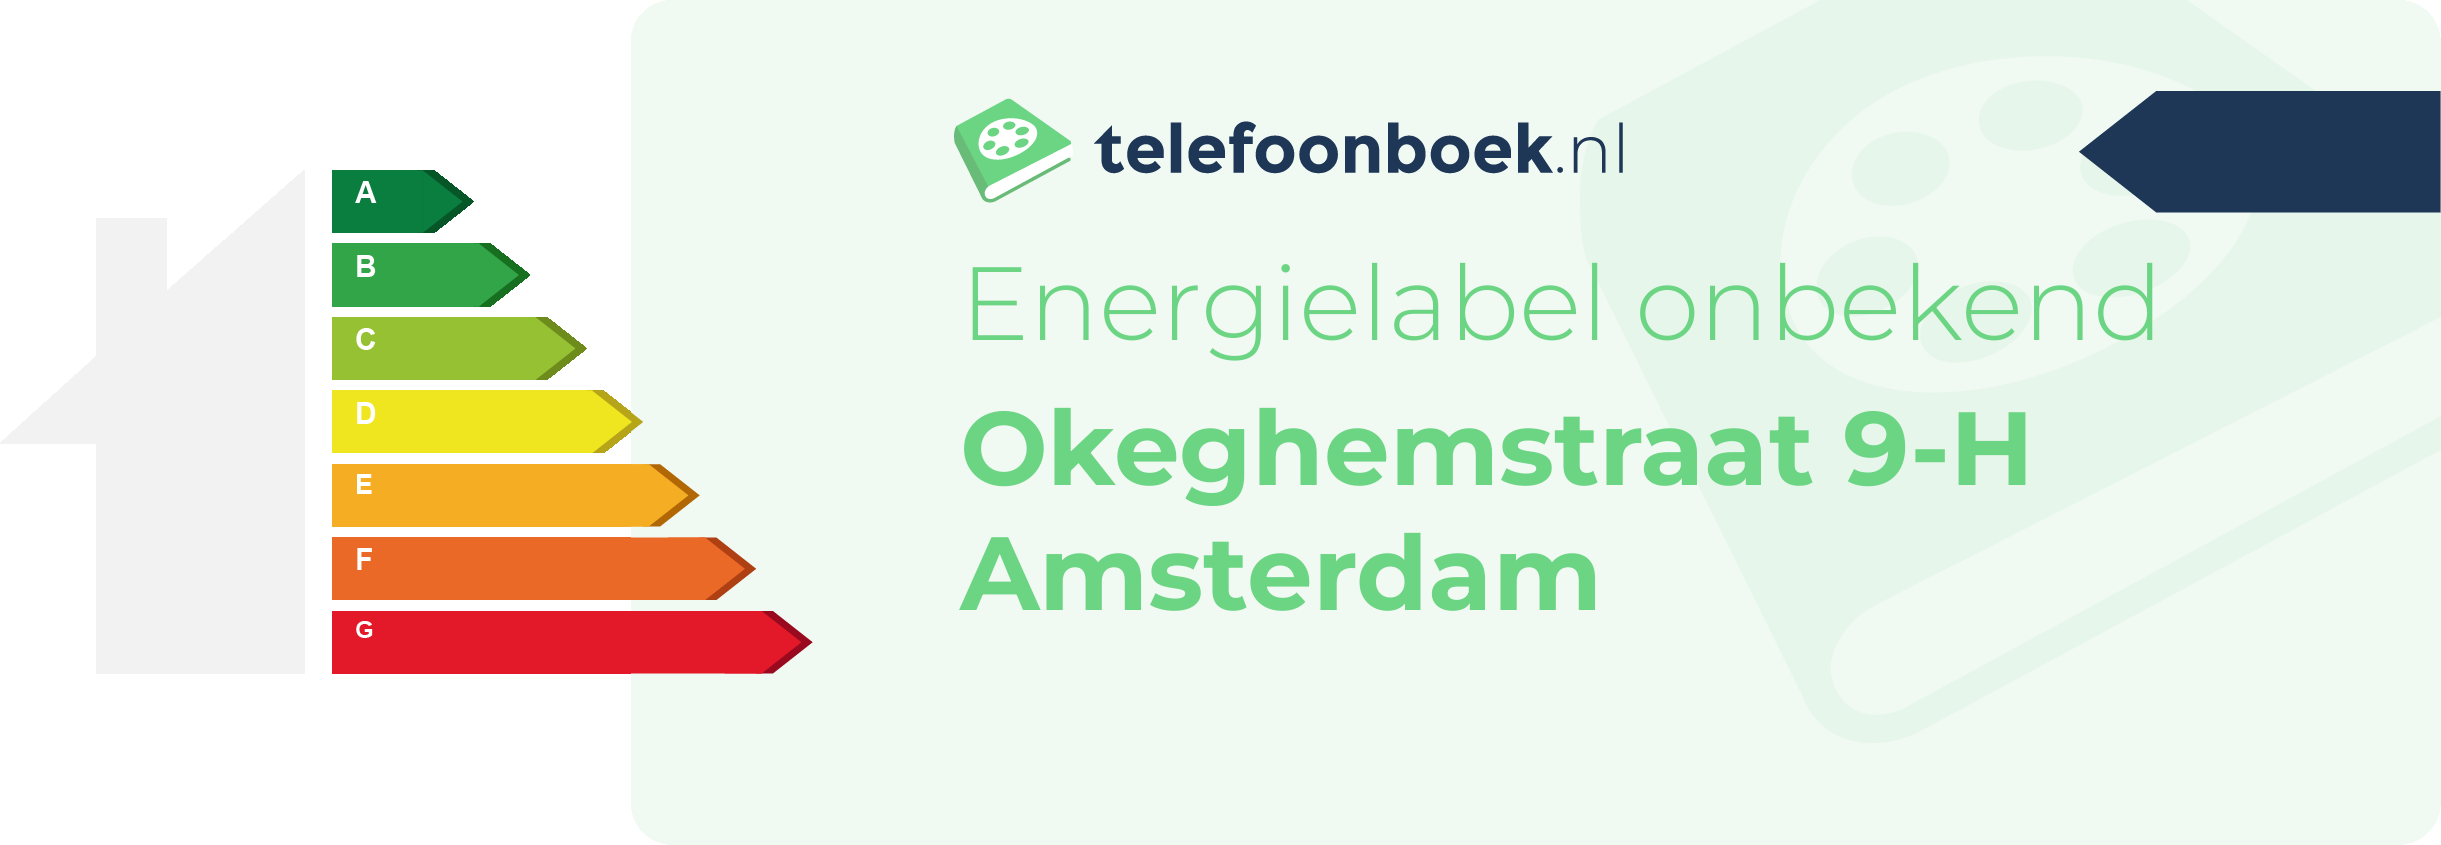 Energielabel Okeghemstraat 9-H Amsterdam